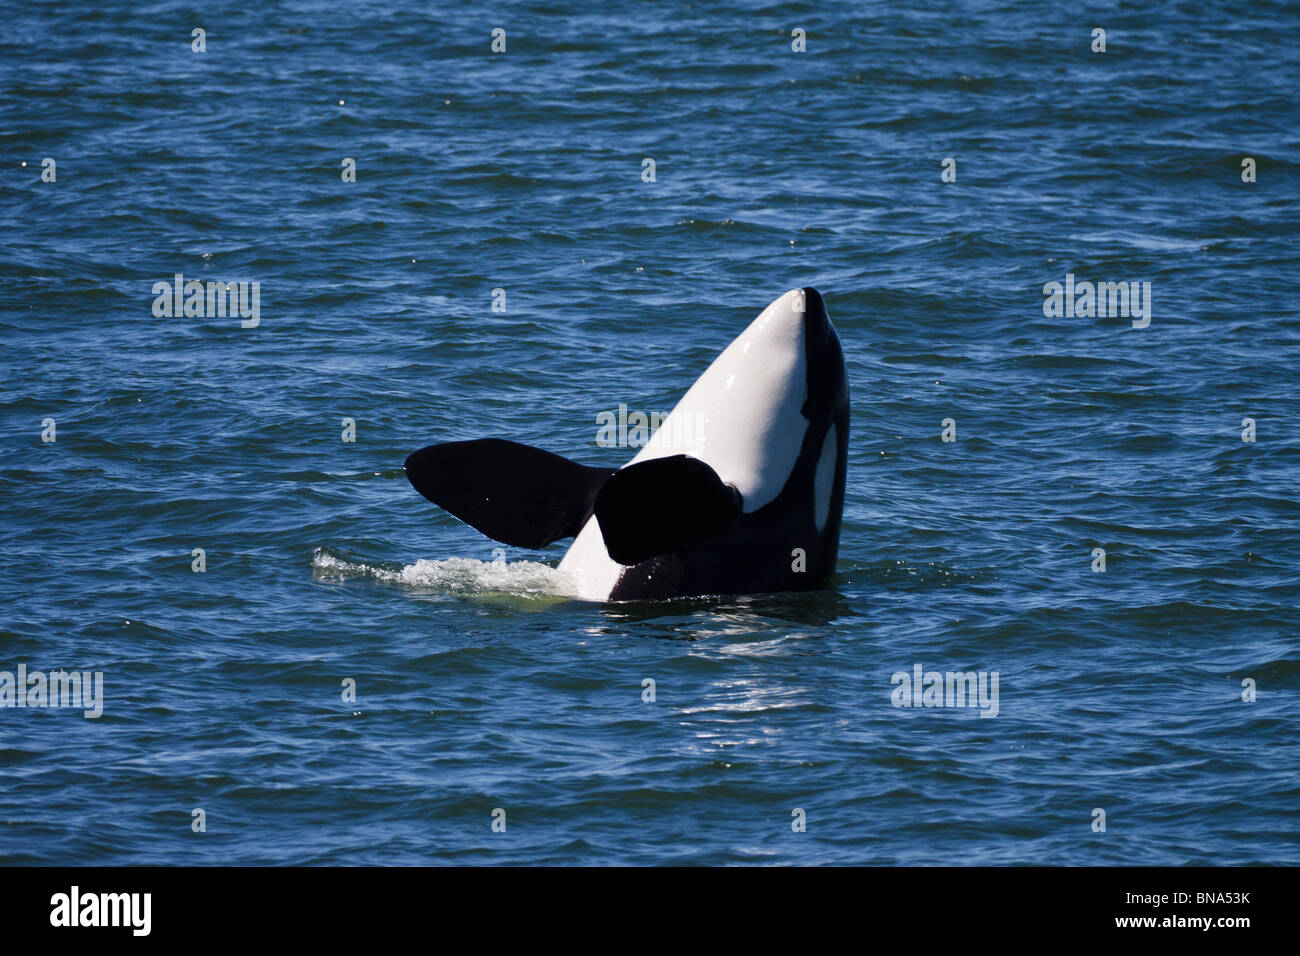 Orca-Wal Shachi J19, Weiblich, geboren 1979, Spion-hopping, Northern Puget Sound oder Salish Sea, WA USA bis BC Kanada Stockfoto